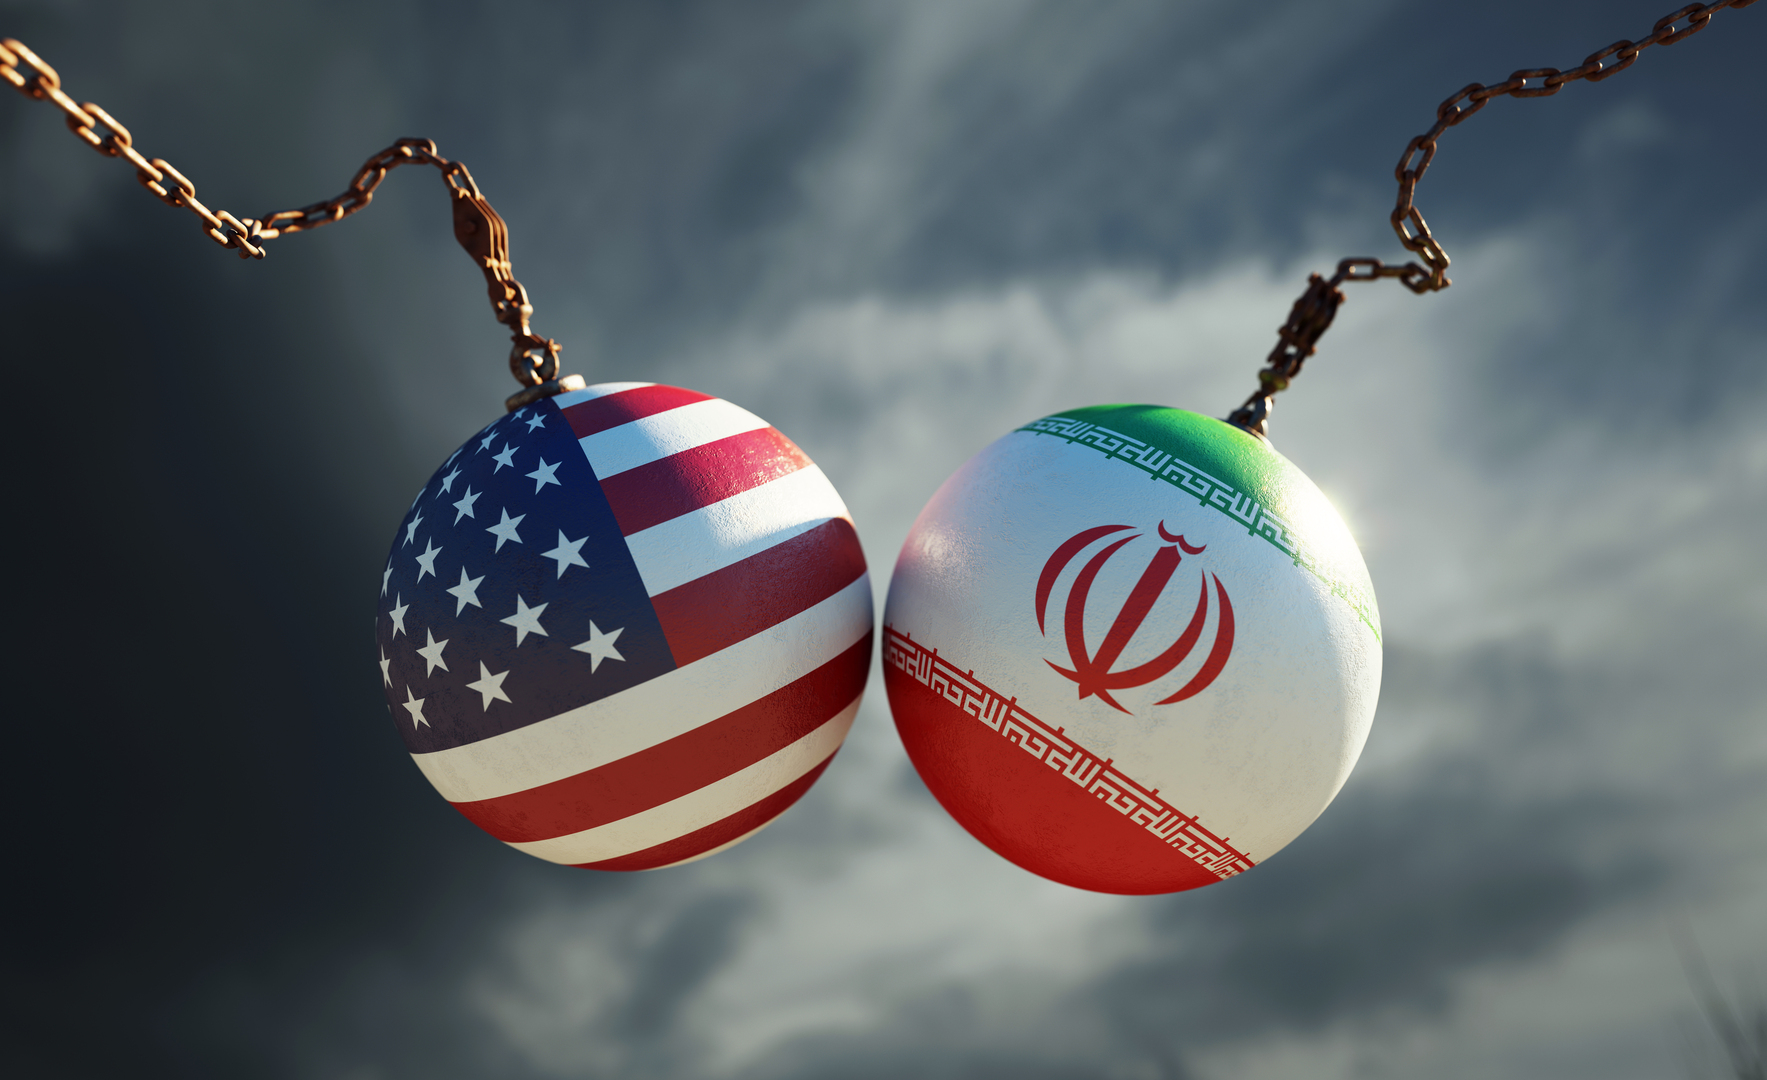 واشنطن تفرض عقوبات على أكثر من 20 فردا وكيانا بزعم تورطهم في شبكات تسهيلات مالية تستفيد منها إيران